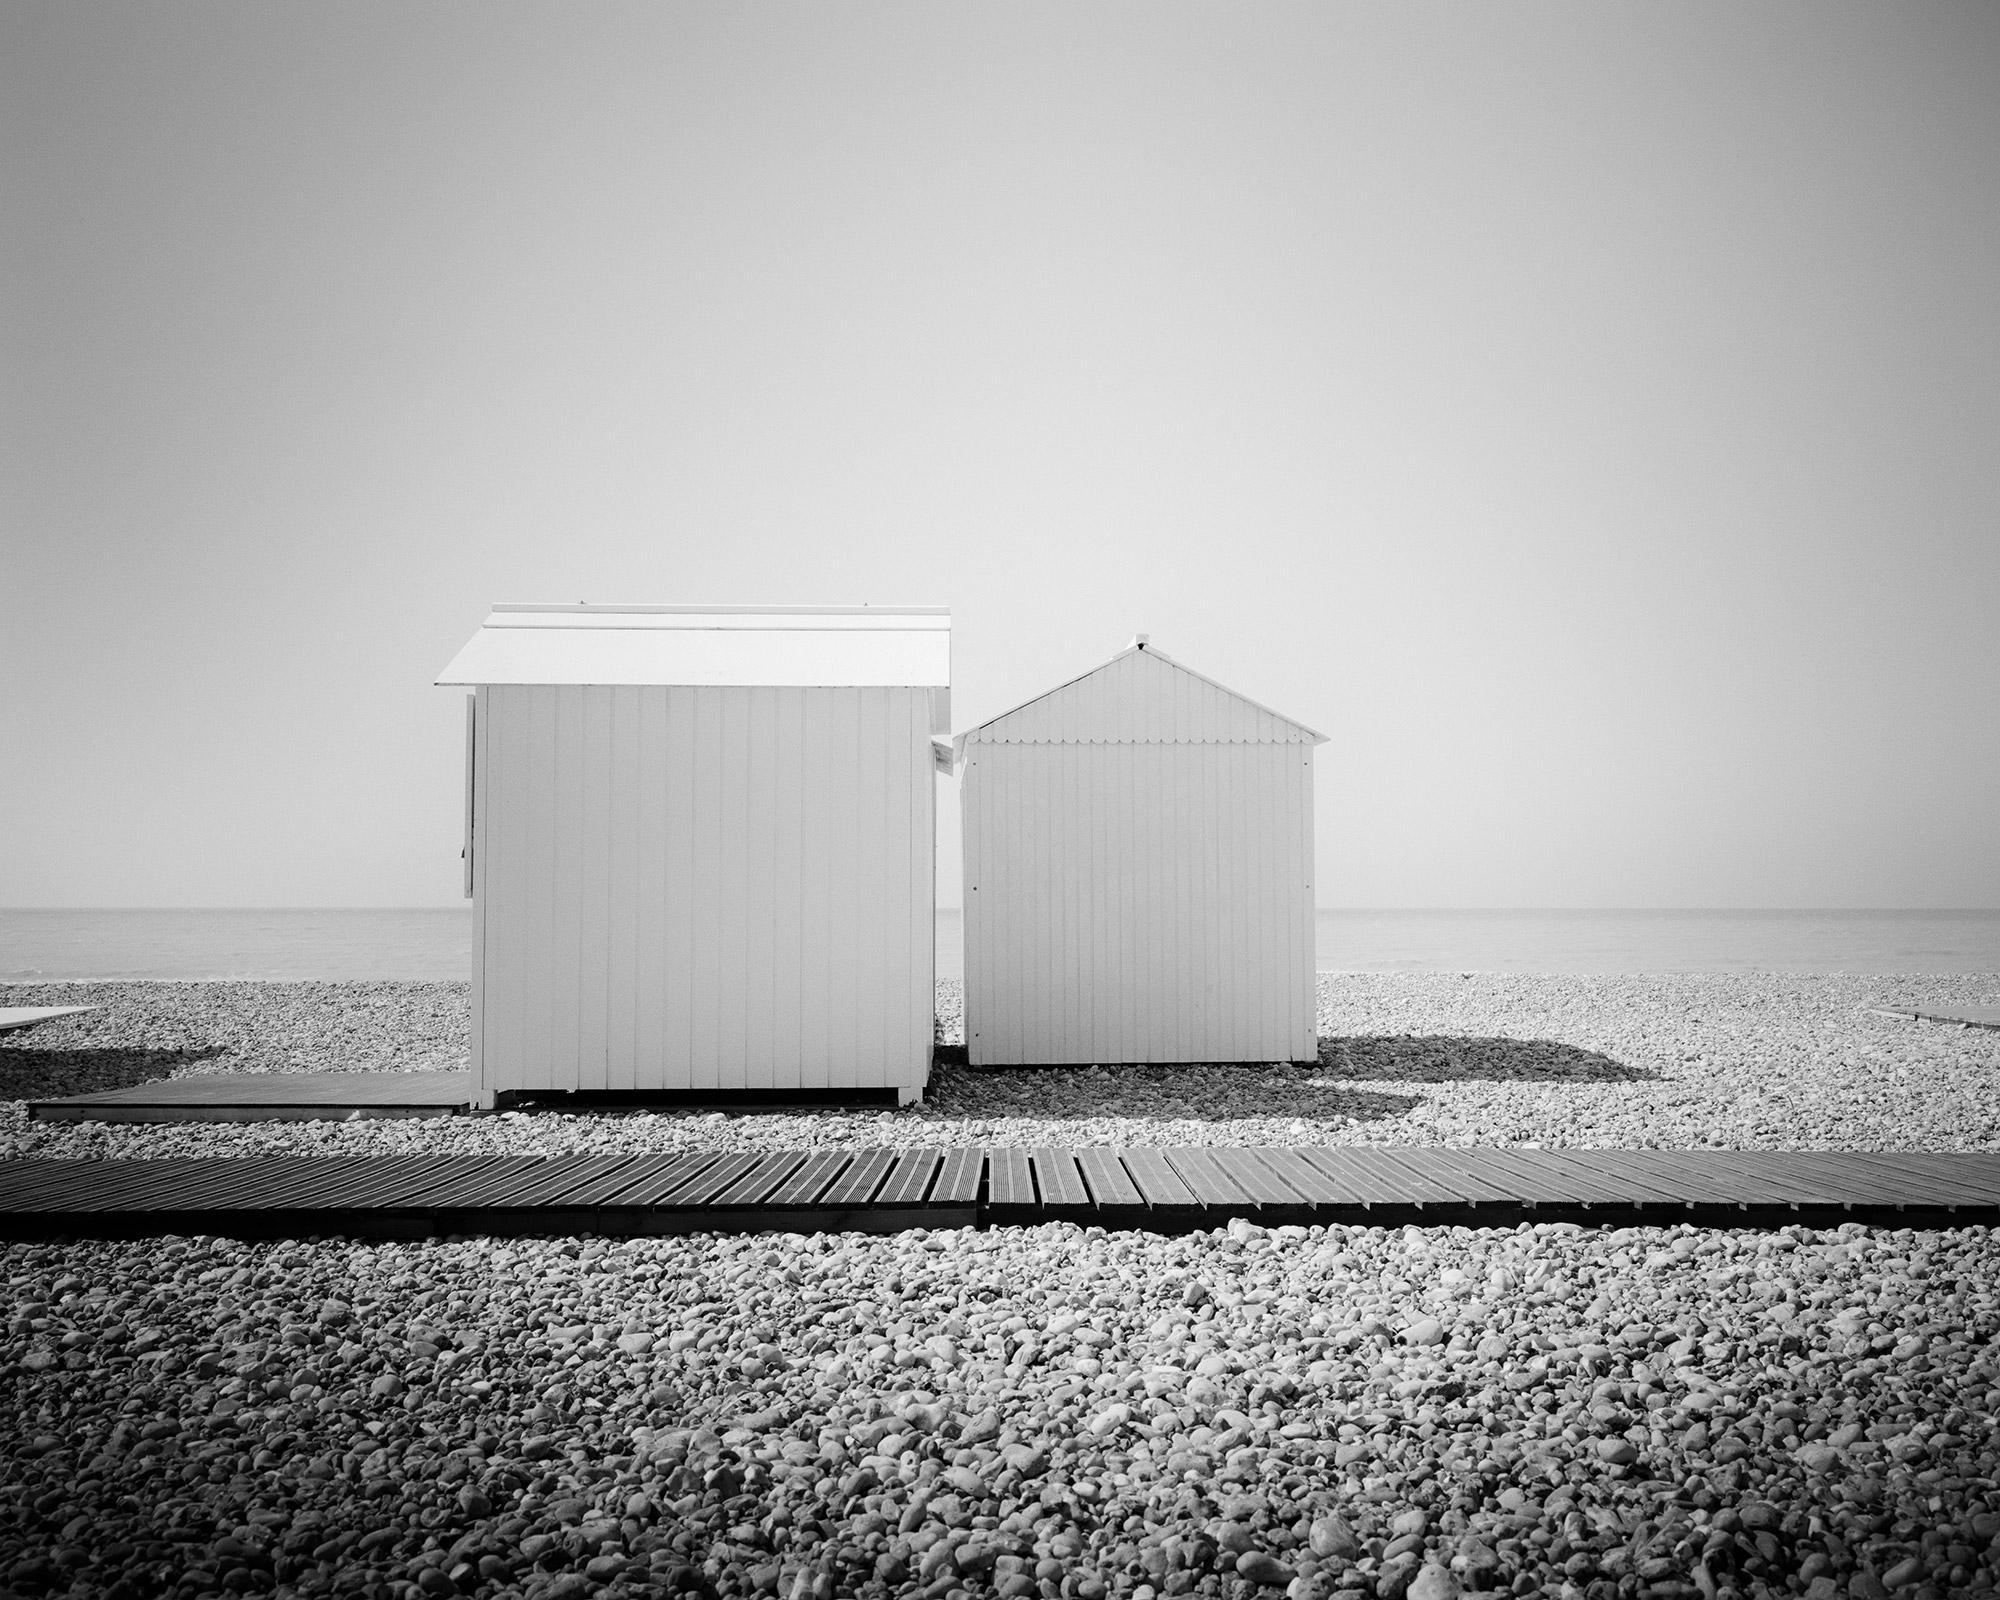 Esplanade, huttes de plage, Normandie, France, photographies de paysages en noir et blanc